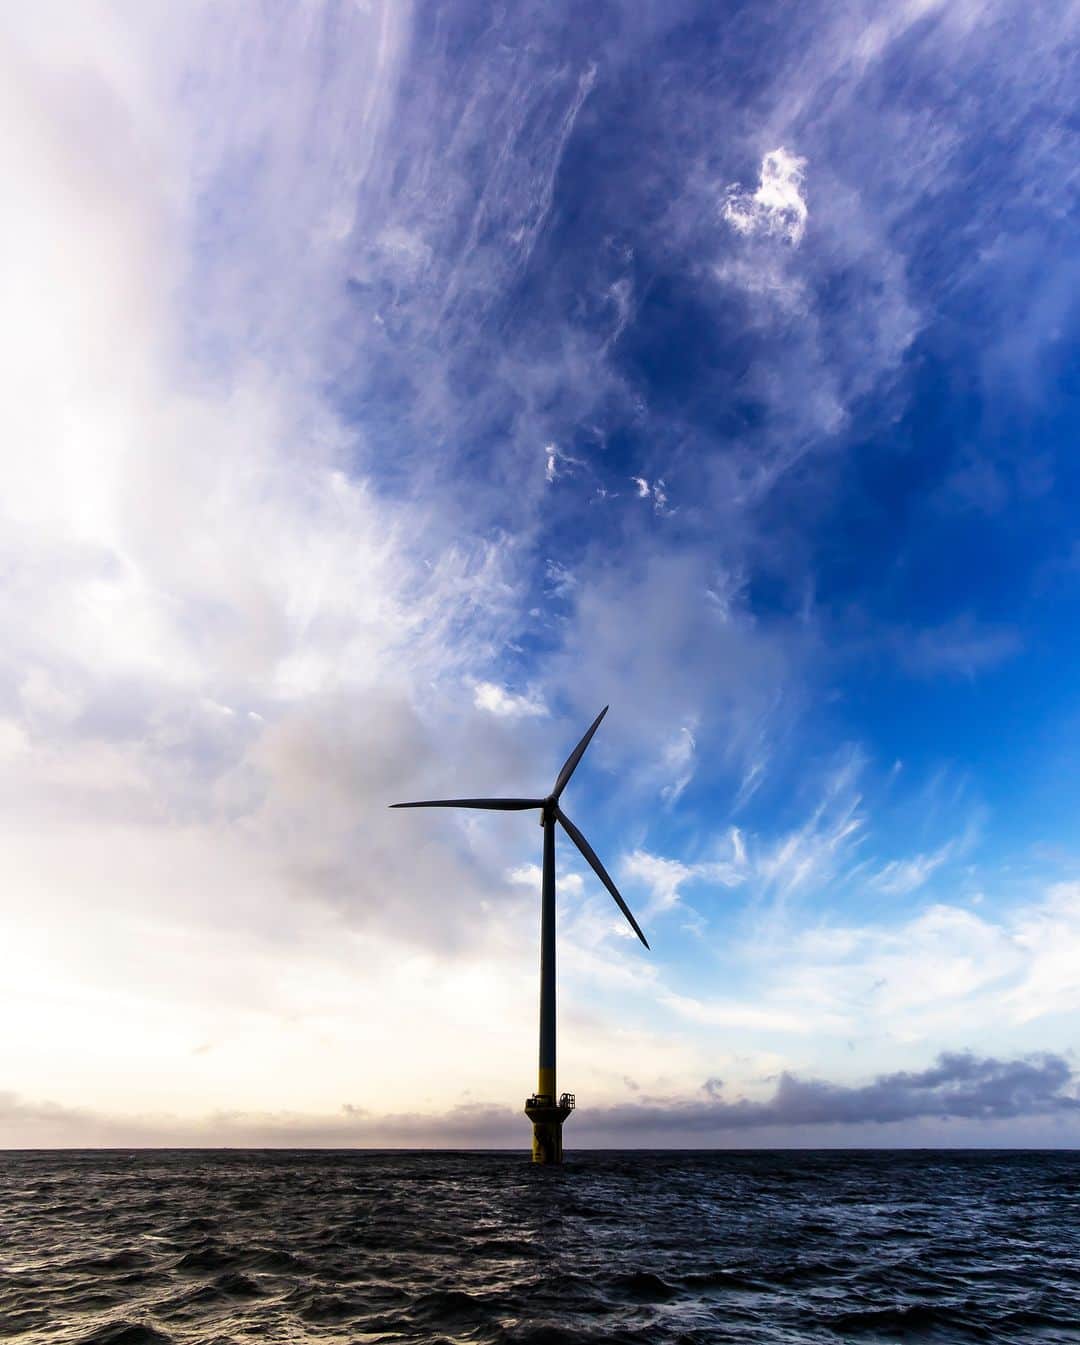 東京電力ホールディングス株式会社のインスタグラム：「銚子沖洋上風力発電所 Choshi Offshore Wind Farm  千葉県銚子沖にある着床式※の沖合洋上風力発電所です。2009年8月から実証研究に着手し、2013年1月に実証運転を開始、2019年1月には国内初の着床式沖合洋上風力発電所として商用運転を開始しました。  東京電力リニューアブルパワーは、これまで積み上げてきた知見と経験を生かし、クリーンなエネルギー供給および拡大を通じて、カーボンニュートラルな社会の実現に貢献してまいります。  ※着床式とは、一般的に水深0～50ｍ程度の洋上で、海底へ設置した支持構造物（基礎）に風力発電機を固定した形式  #東京電力 #tepco #千葉県 #風力発電所 #風力発電 #風力 #再生可能エネルギー #windfarm #renewableenergy #renewable #renewablepower #powerstation #powerplant #風景写真 #景色写真」